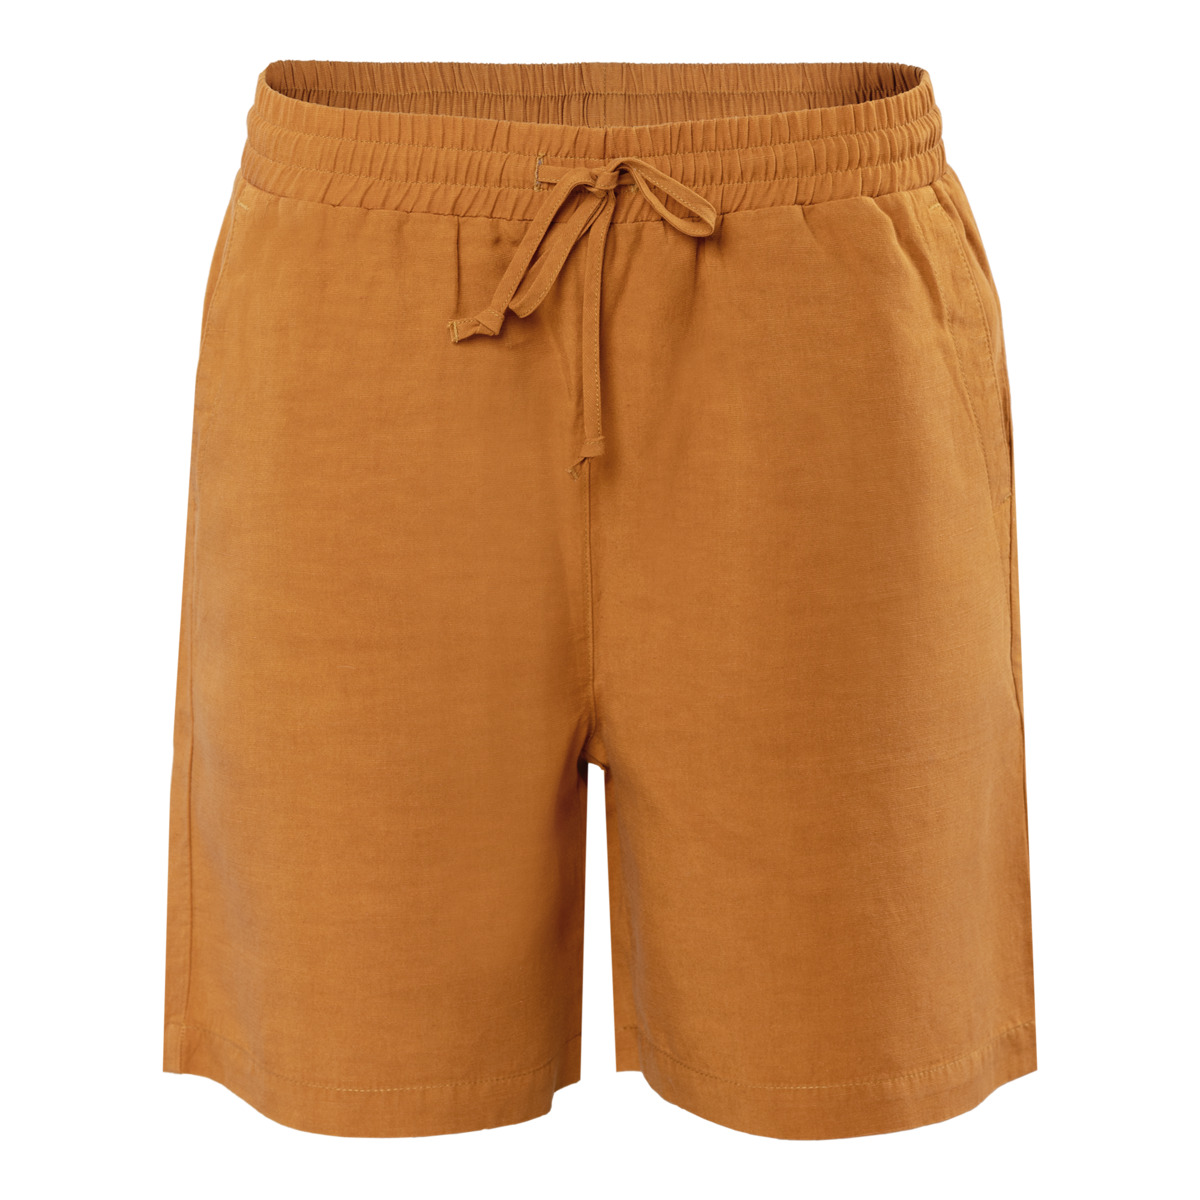 Braun Bermuda Shorts, ORSINA